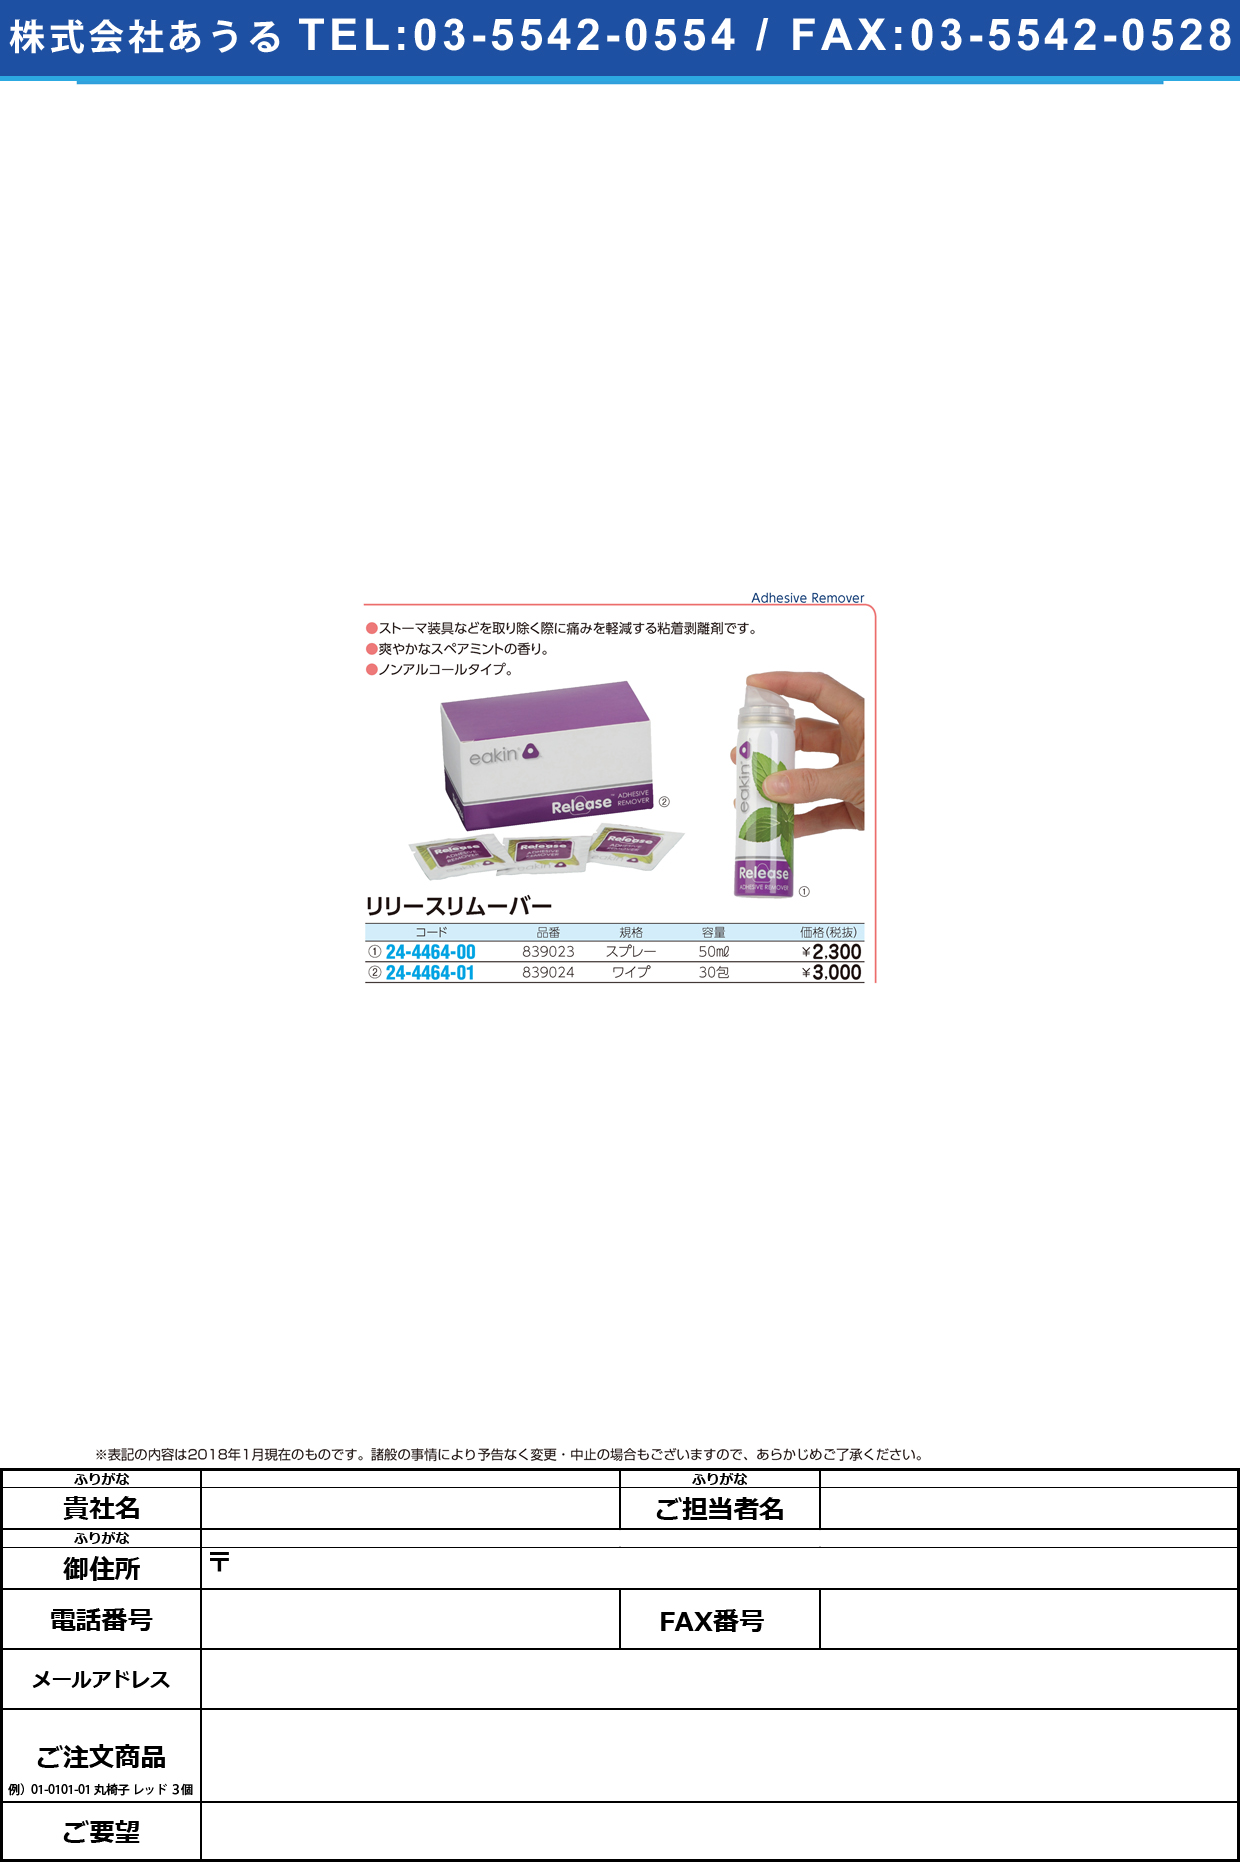 (24-4464-01)リリースリムーバー 839024(ﾜｲﾌﾟ)30ﾎｳ ﾘﾘｰｽﾘﾑｰﾊﾞｰ【1箱単位】【2019年カタログ商品】